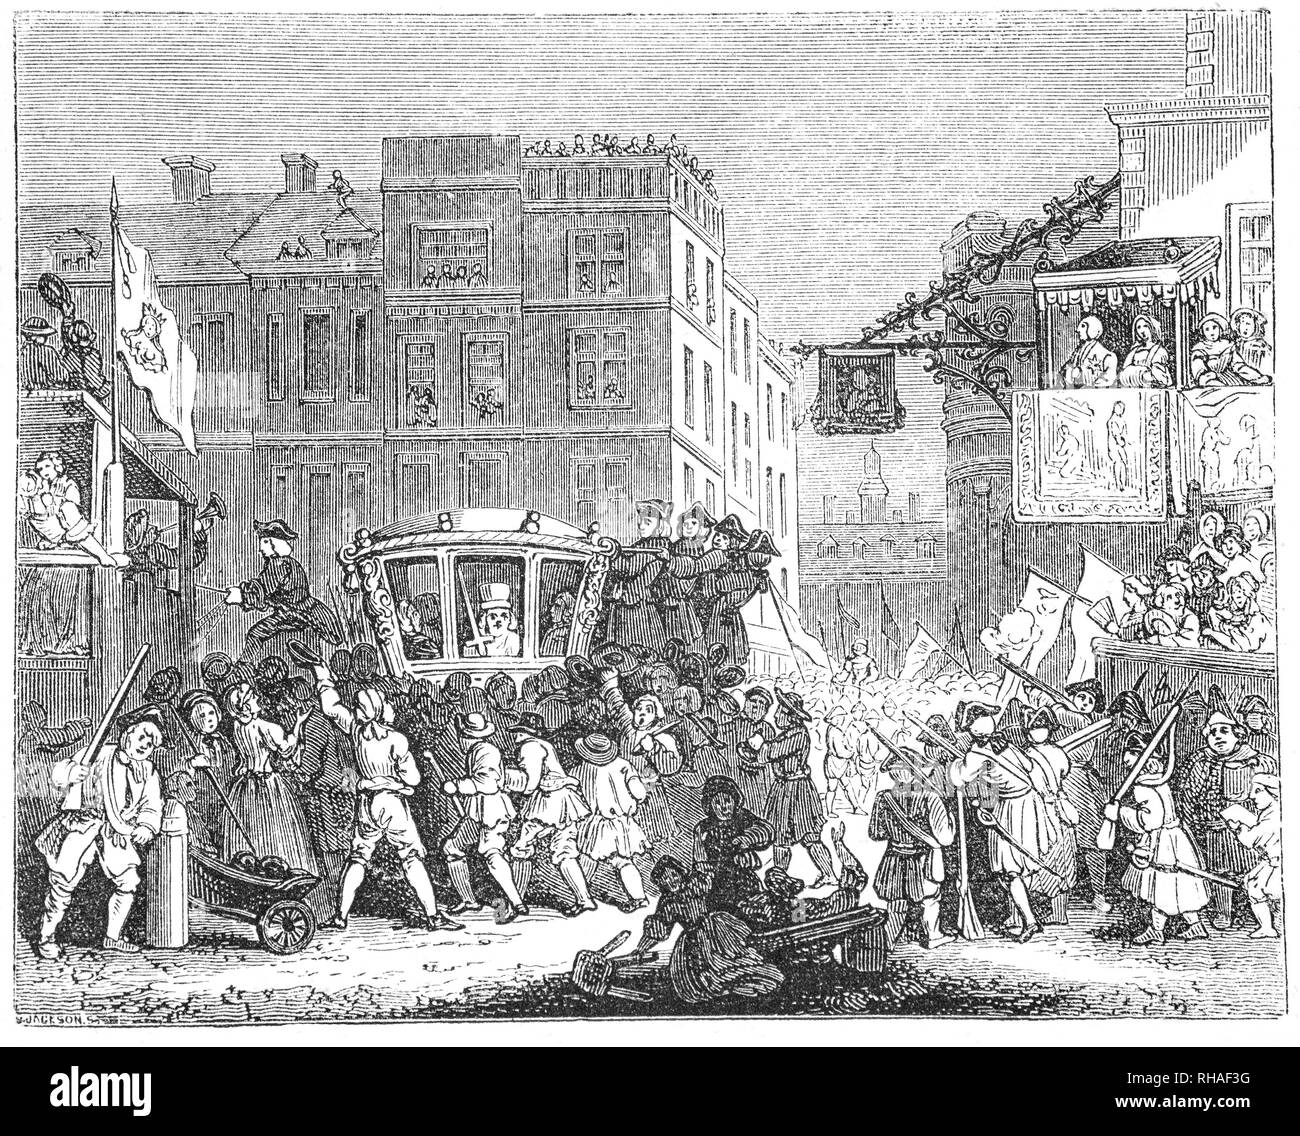 18e siècle, Londres le jour après son assermentation, le Maire mène une procession de la ville de Londres à la Cour royale de Justice dans la ville de Westminster, où le maire jure allégeance à la Couronne, un événement annuel qui est devenu connu sous le nom de "Lord Mayor's Show'. Le maire de voyages dans l'état de la ville que l'entraîneur a été construit en 1757 à un coût de £1,065.0s.3d. Banque D'Images